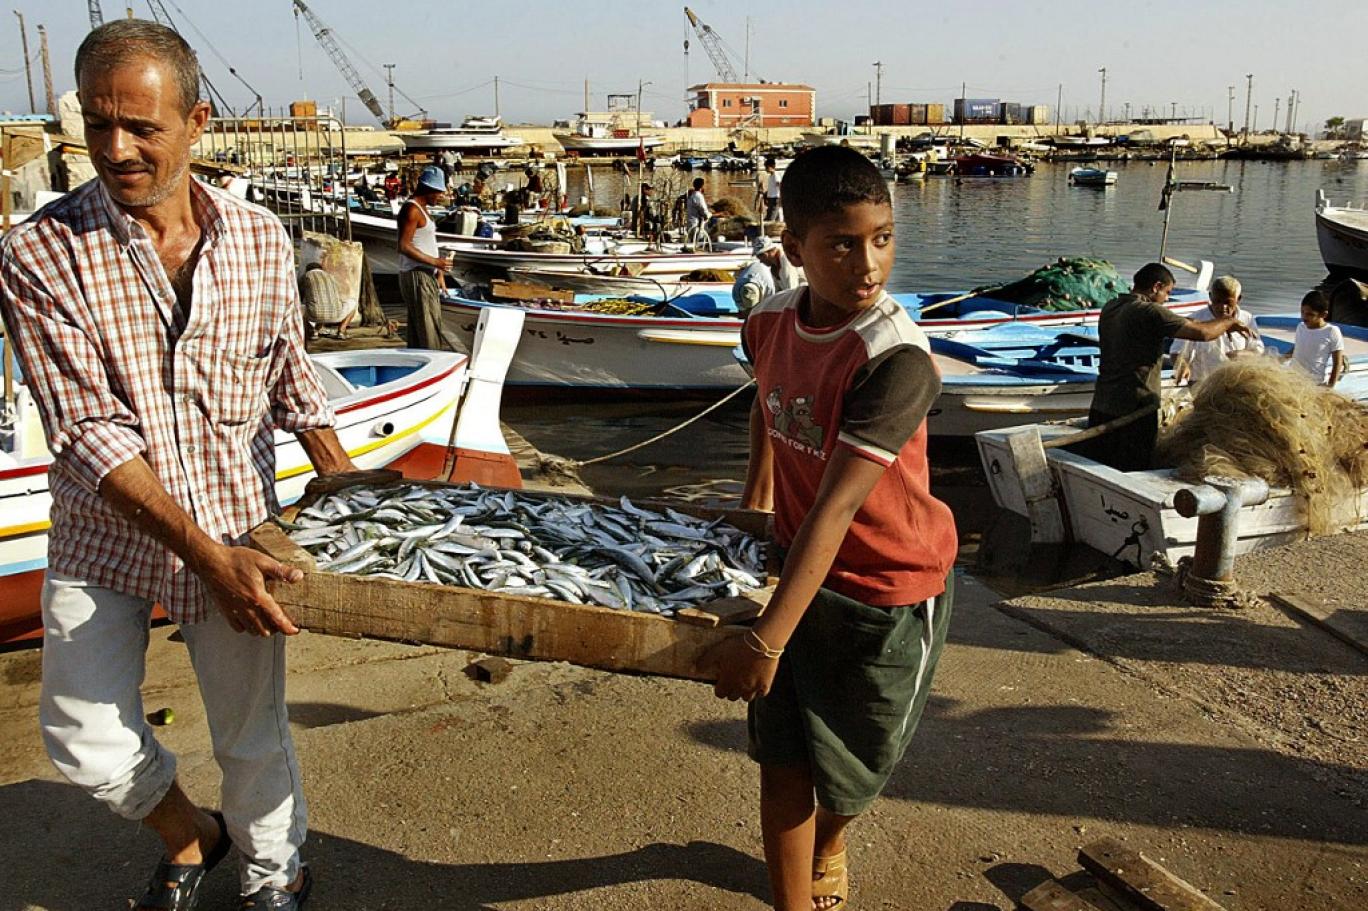 يعاني غياب الدعم وغلاء المعدات والصيد الجائر ... قطاع صيد السمك في لبنان تحاوطه "شباك الأزمة"